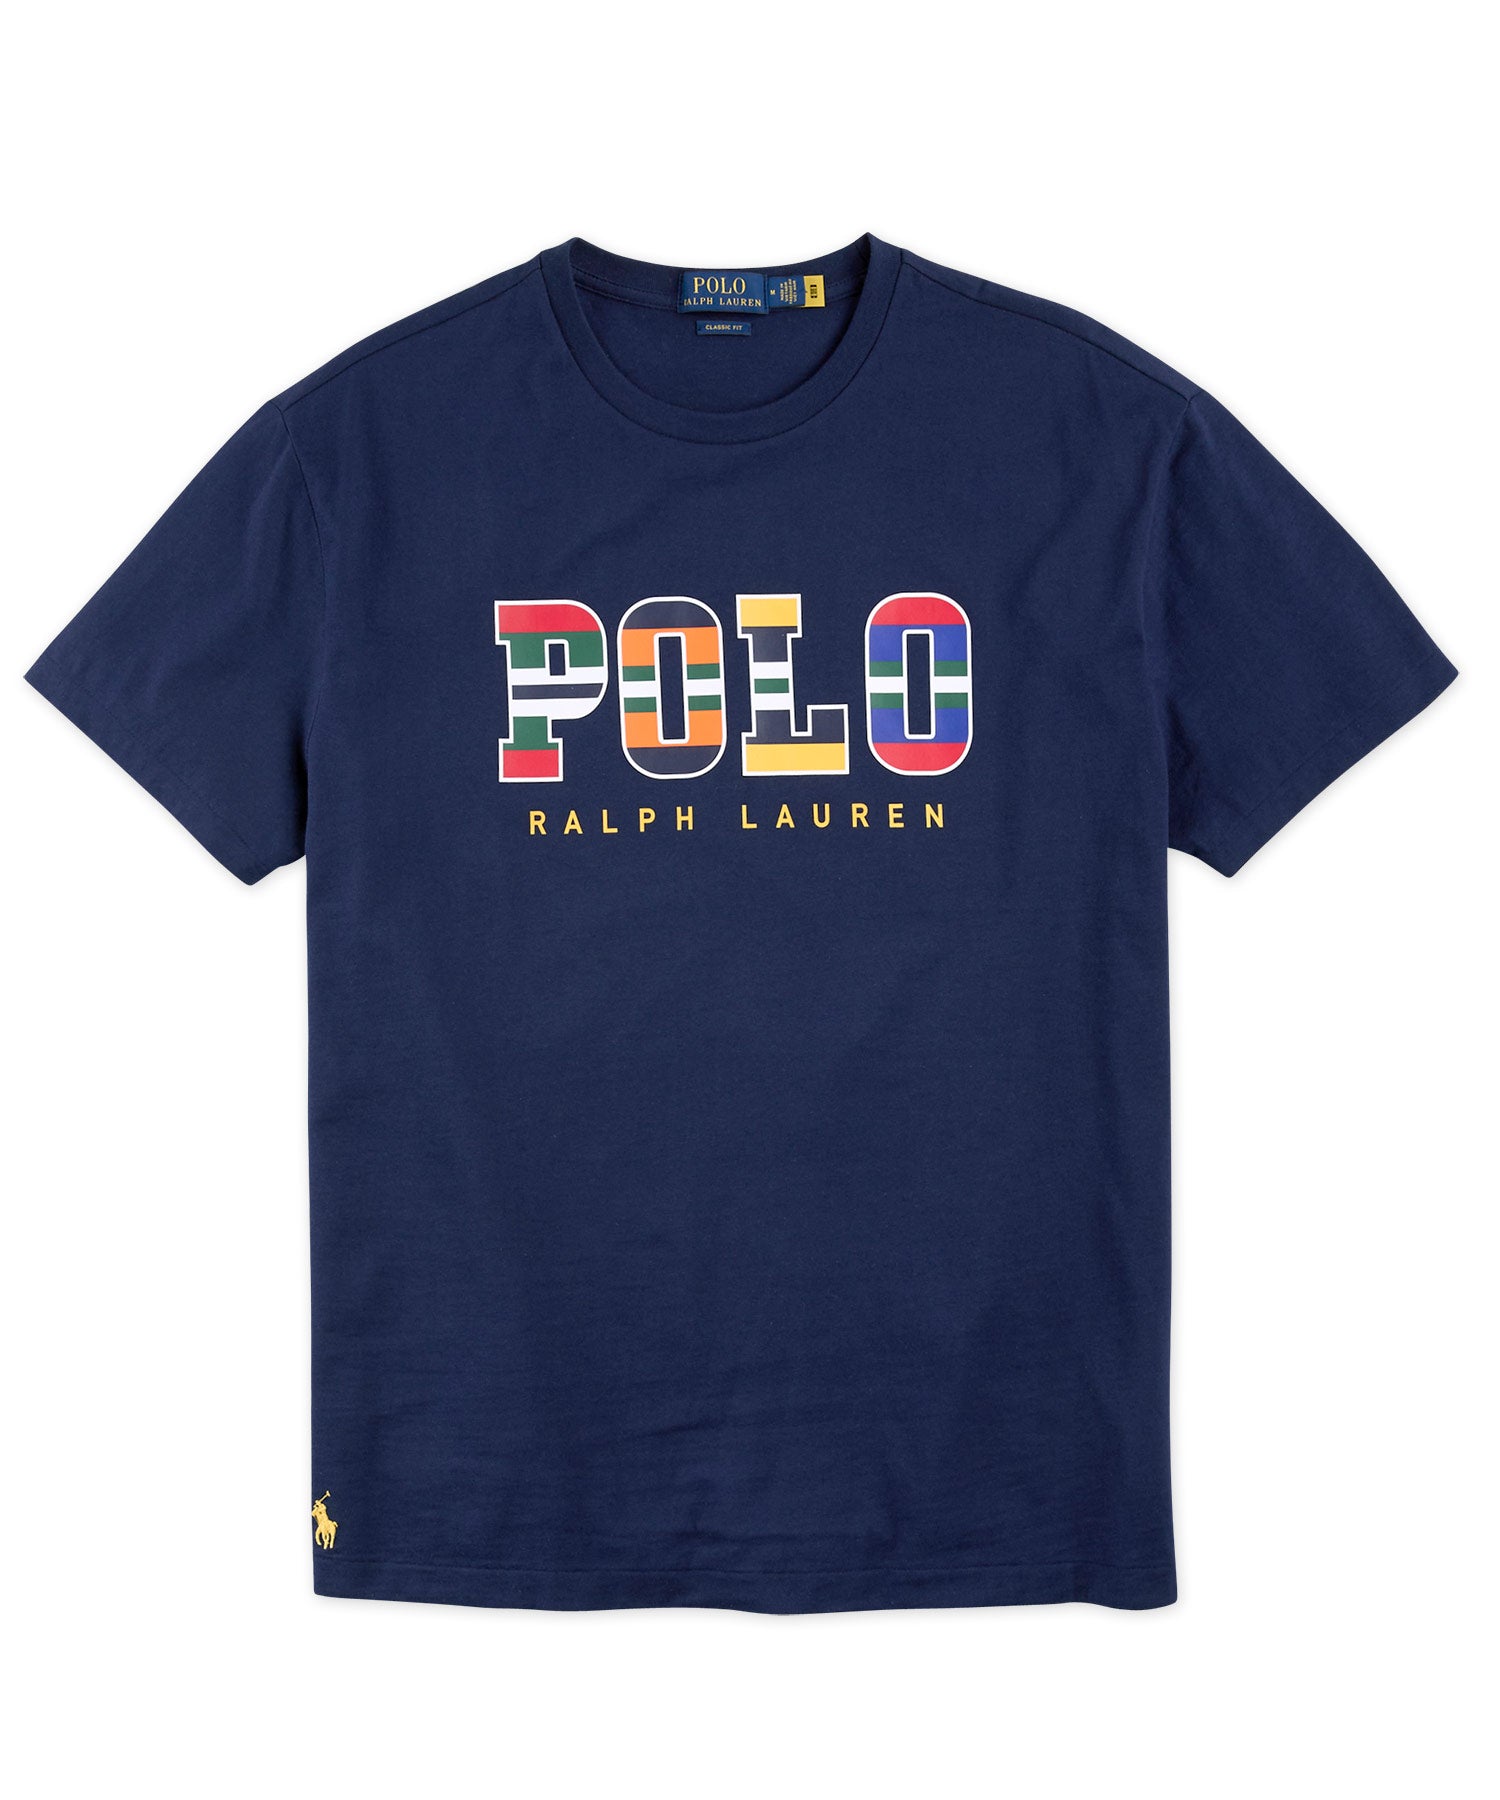 Polo Ralph Lauren Short Sleeve Graphic Tee Shirt - Westport Big Tall